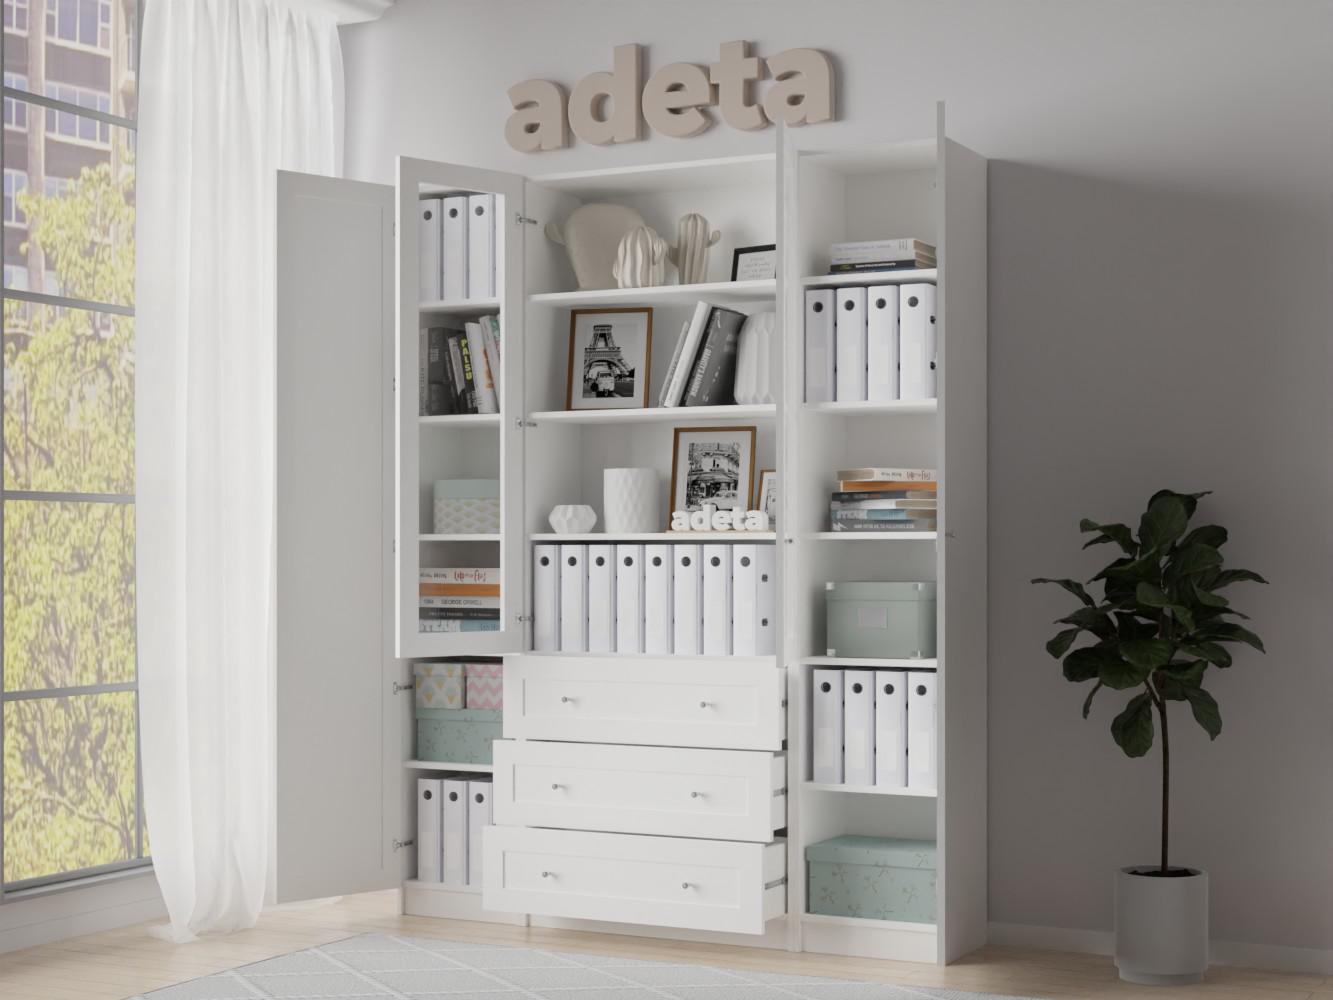 Изображение товара Книжный шкаф Билли 45 white ИКЕА (IKEA), 160x30x202 см на сайте adeta.ru